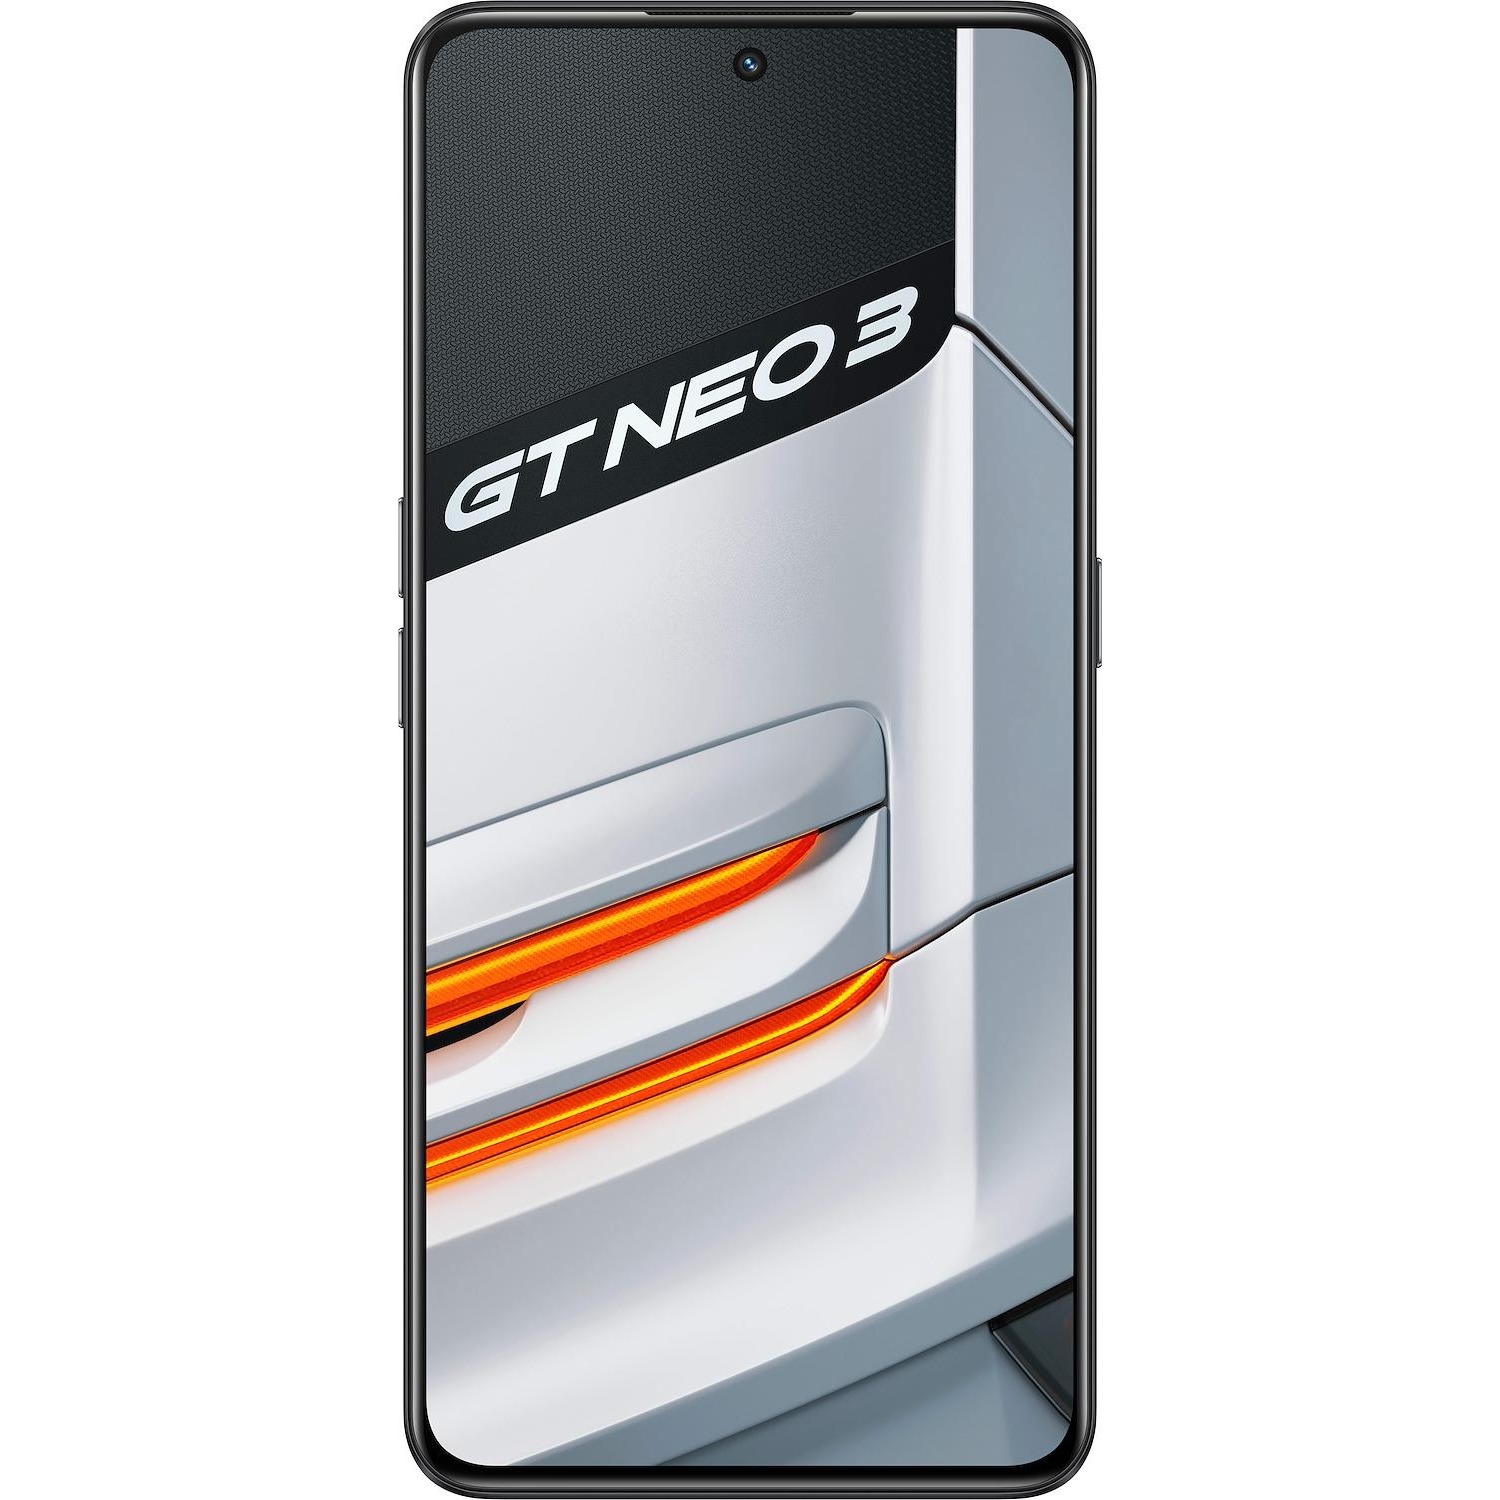 Immagine per Smartphone Realme GT Neo 3 sprint white bianco da DIMOStore